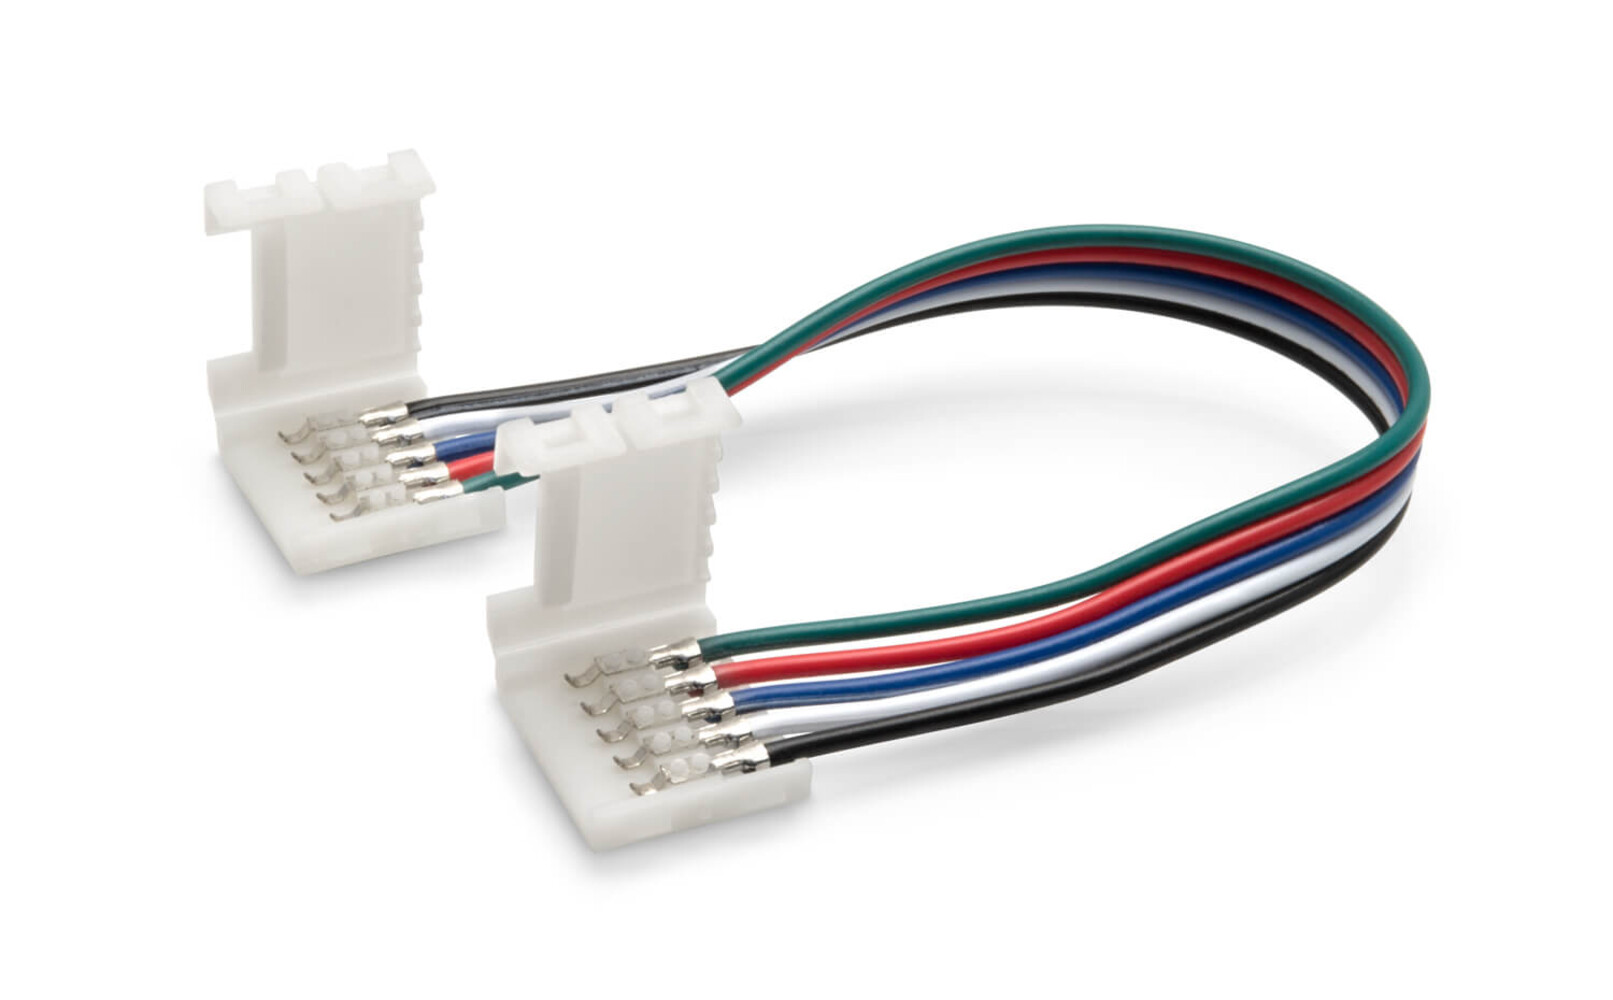 LED Universum - LED Streifen Kabel, 15cm 5-pol Kabel mit Klippbefestigung und Schnellverbinder für RGBW LED Streifen